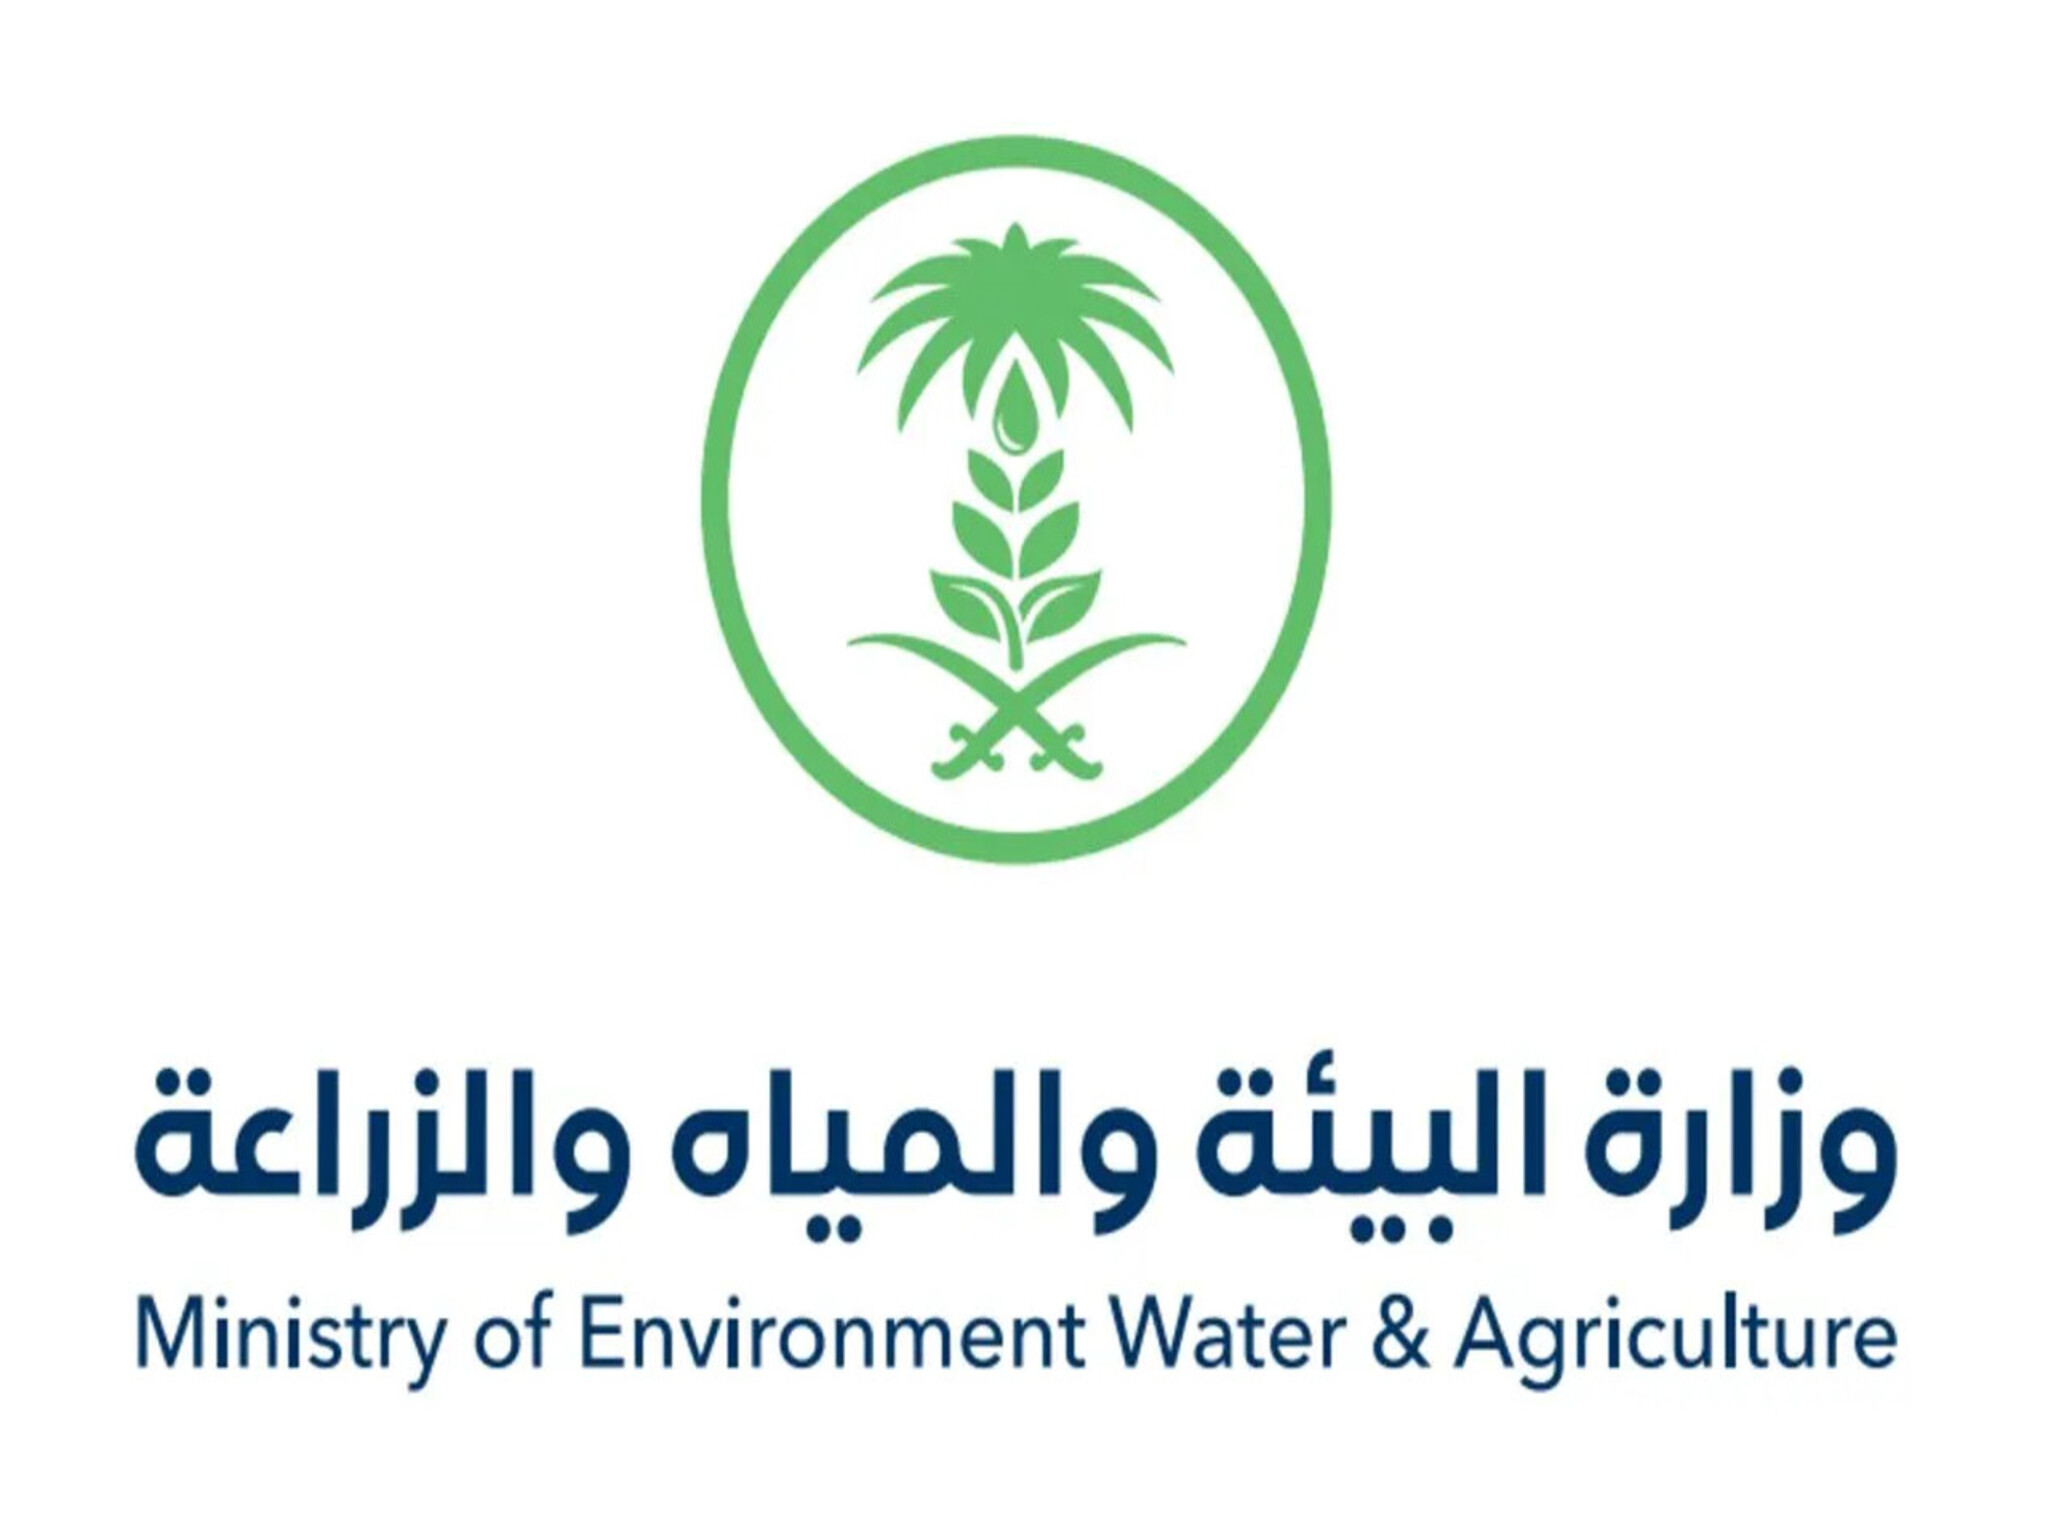 وزارة البيئة والزراعة توضح شروط إصدار رخصة زراعة القمح (1445هـ ــ 2024مـ )